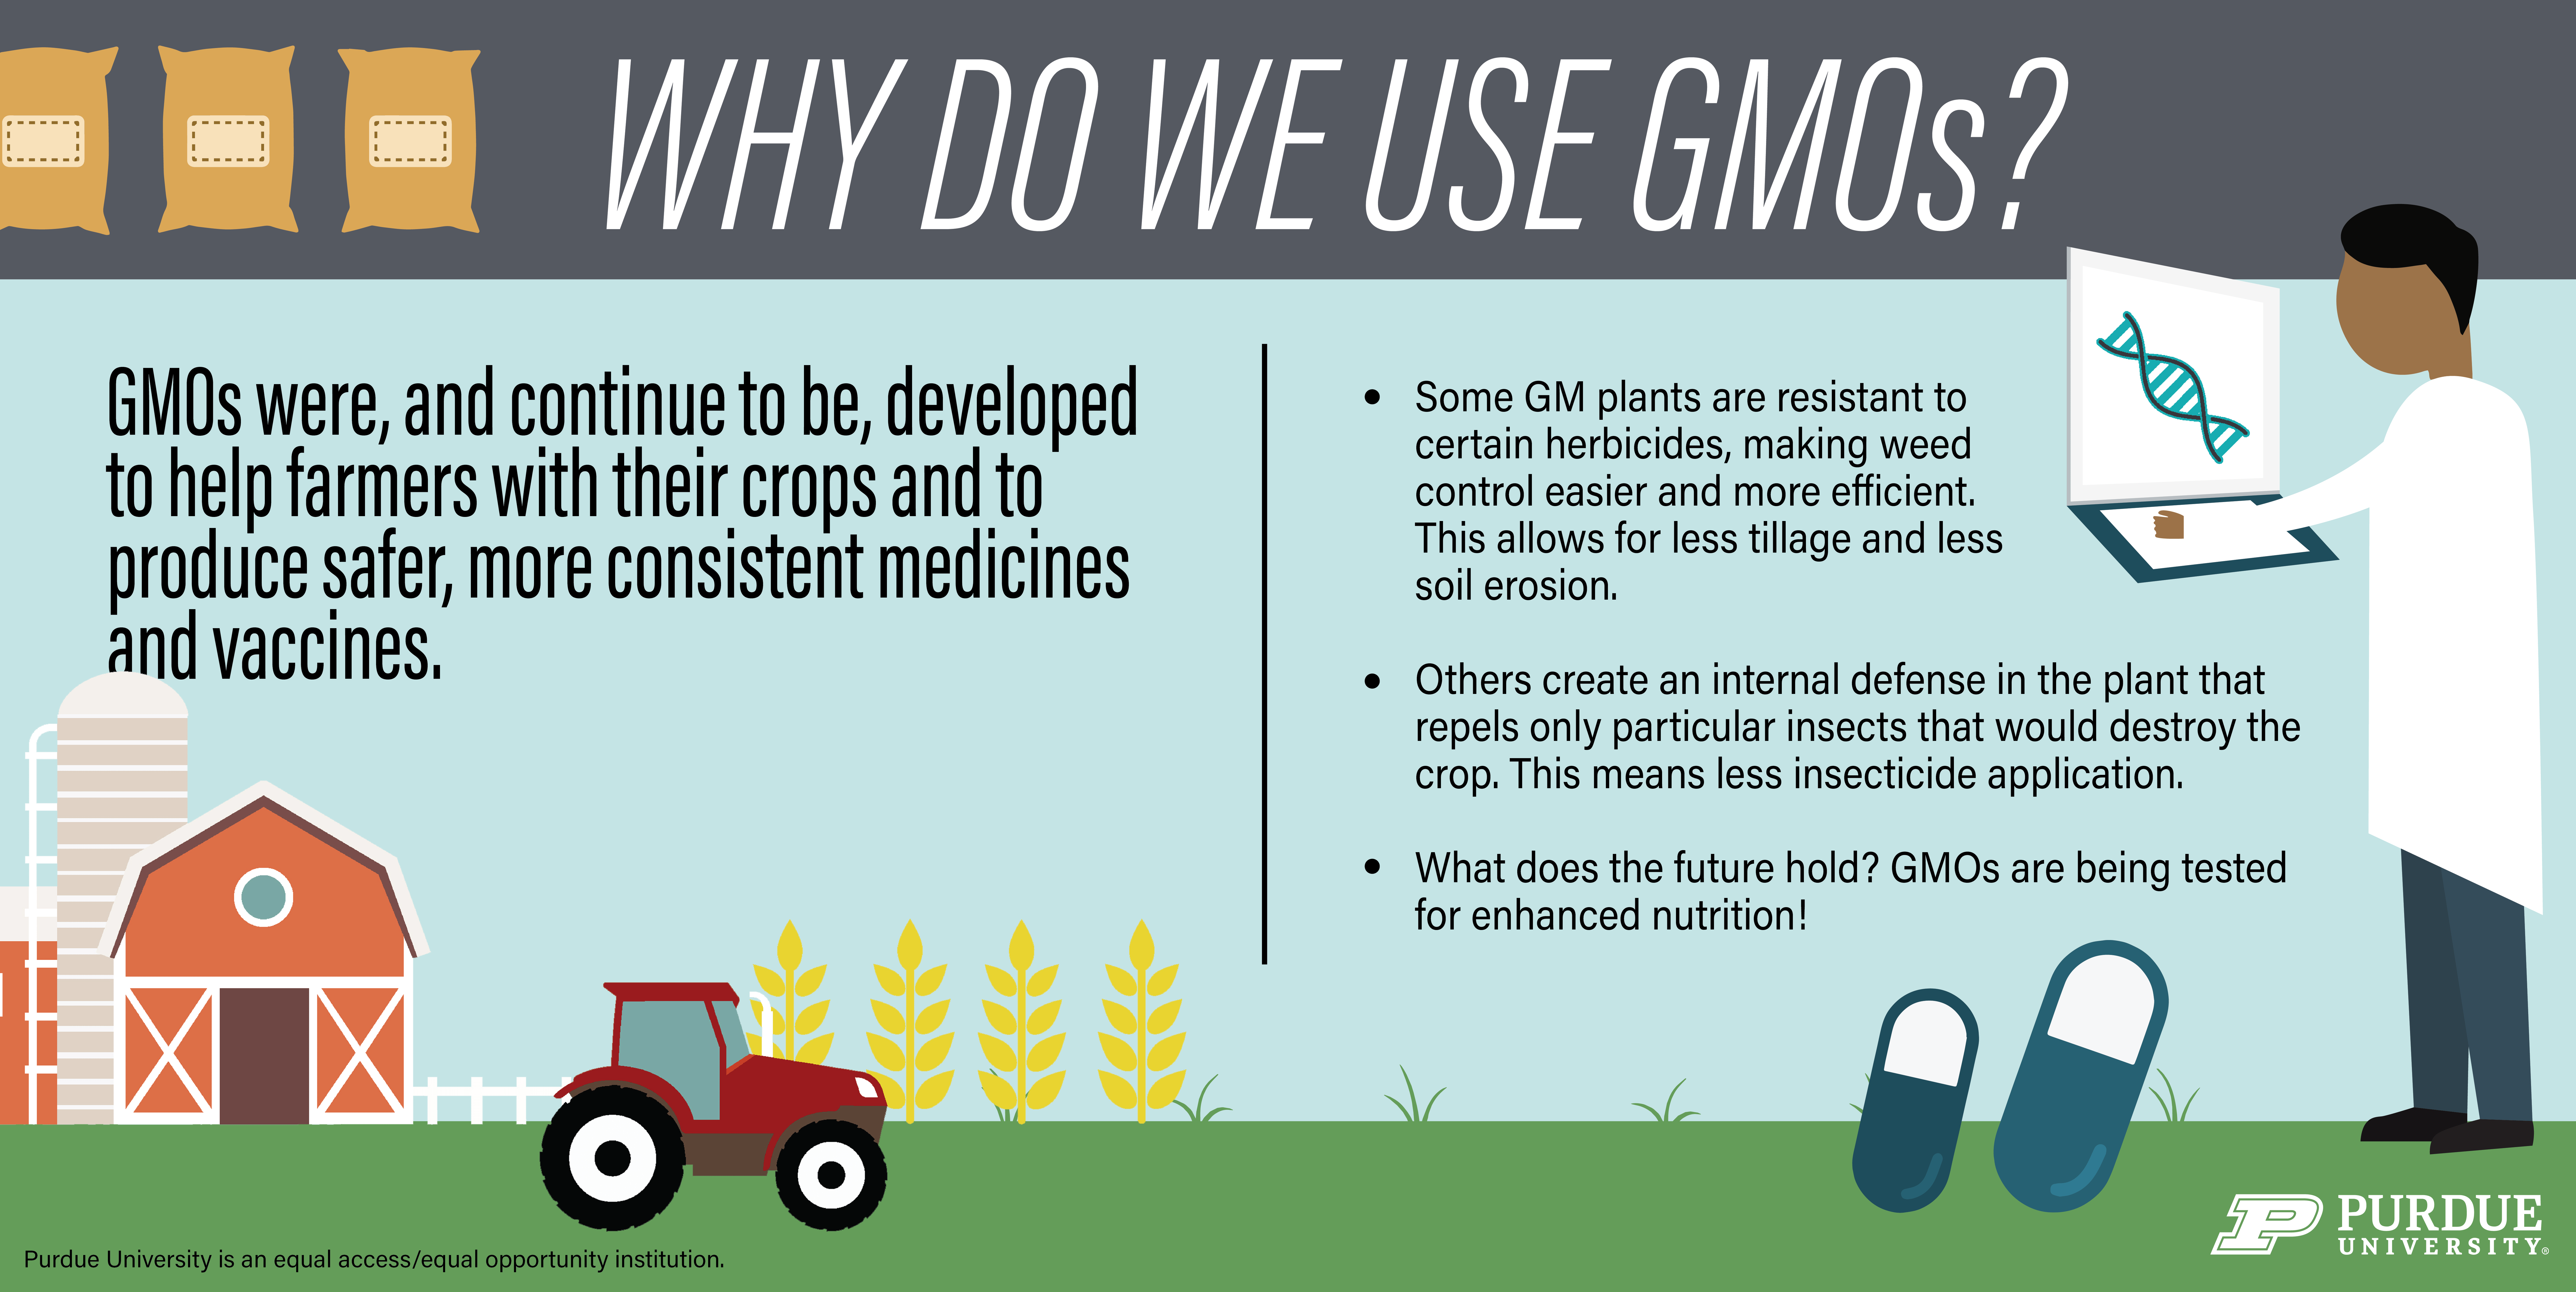 Why do we use GMOs?